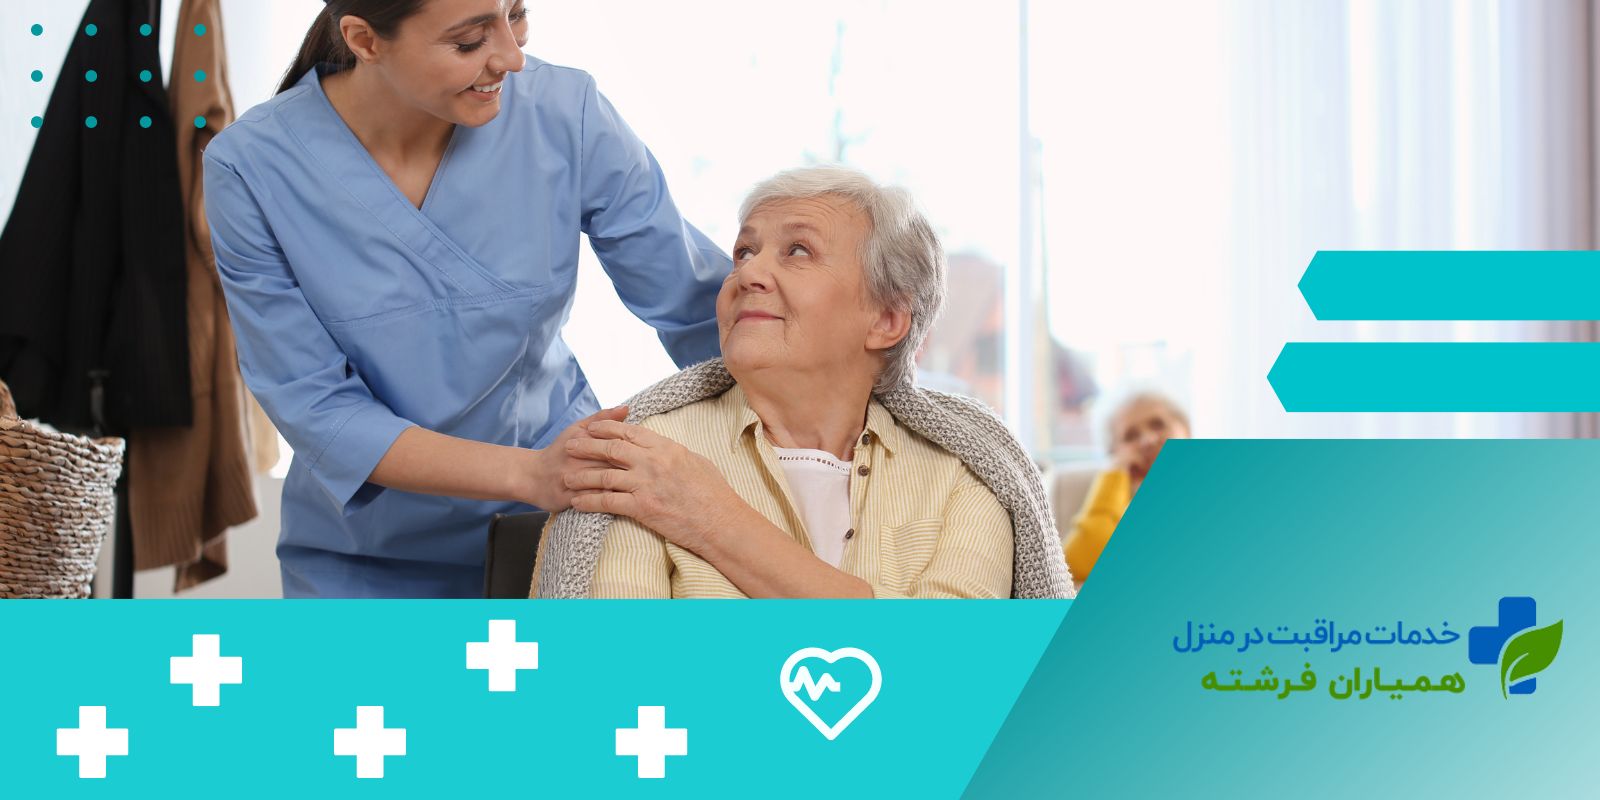 اعزام پرستار سالمند خانم + شبانه روزی (رزرو آنلاین)